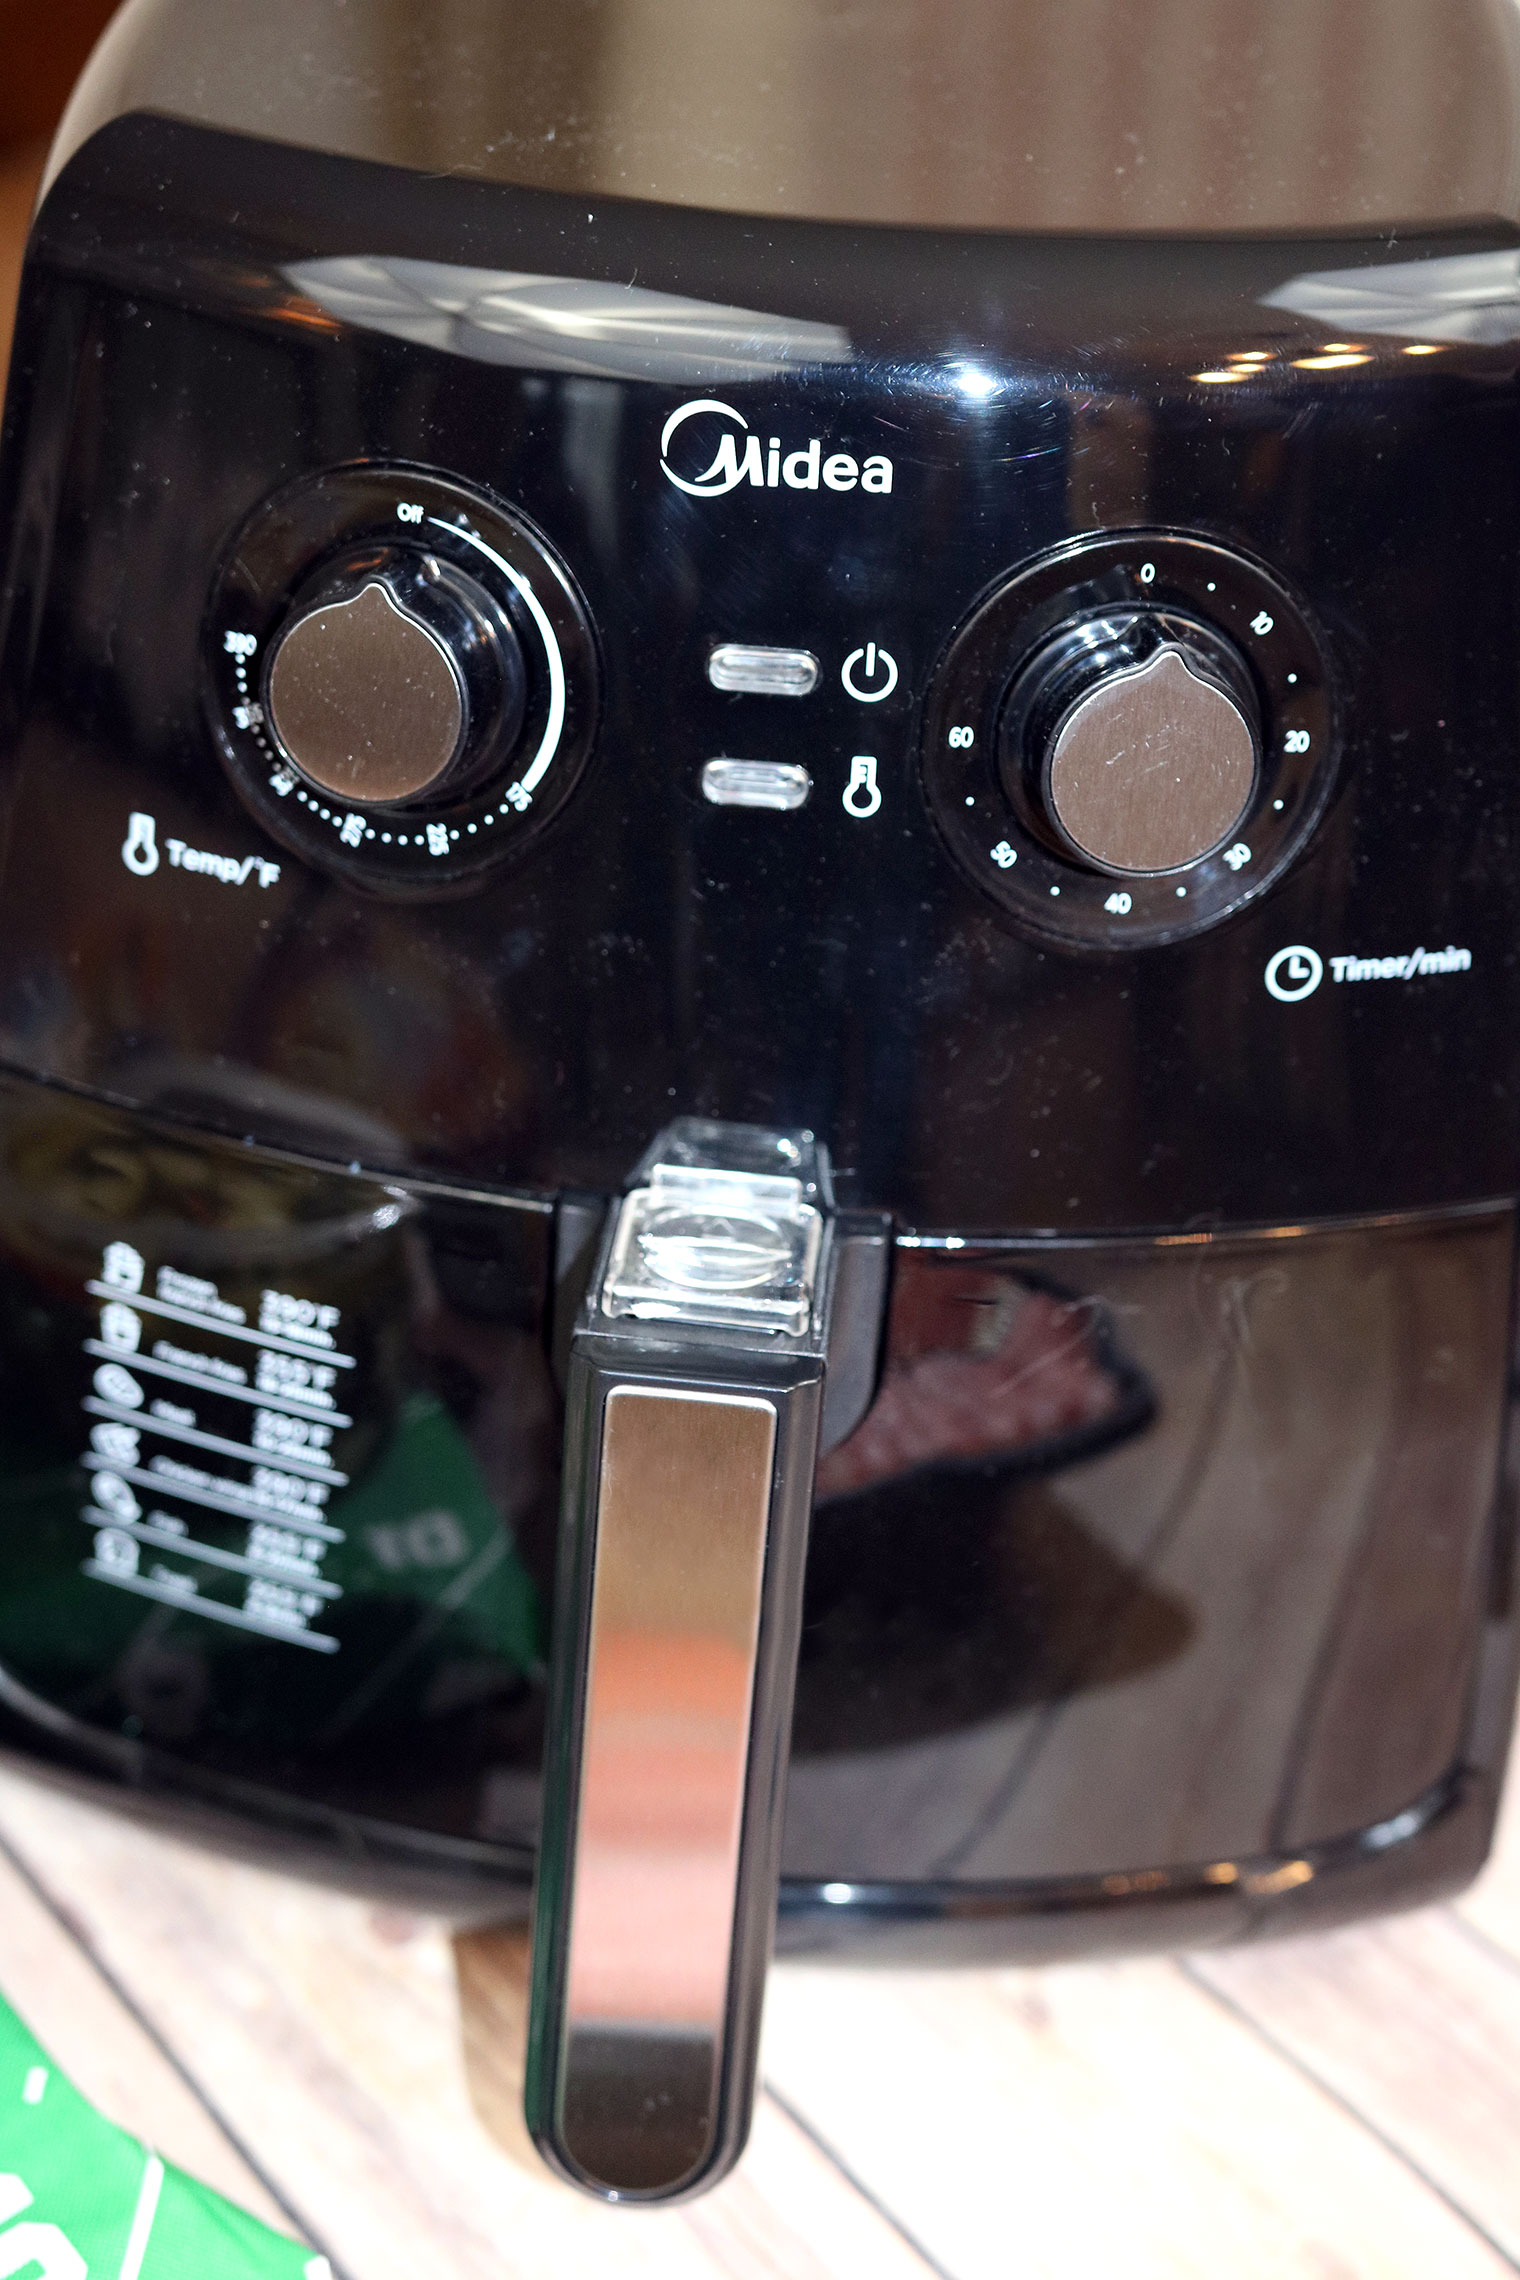 8L Manual Air Fryer – Midea Home Appliances